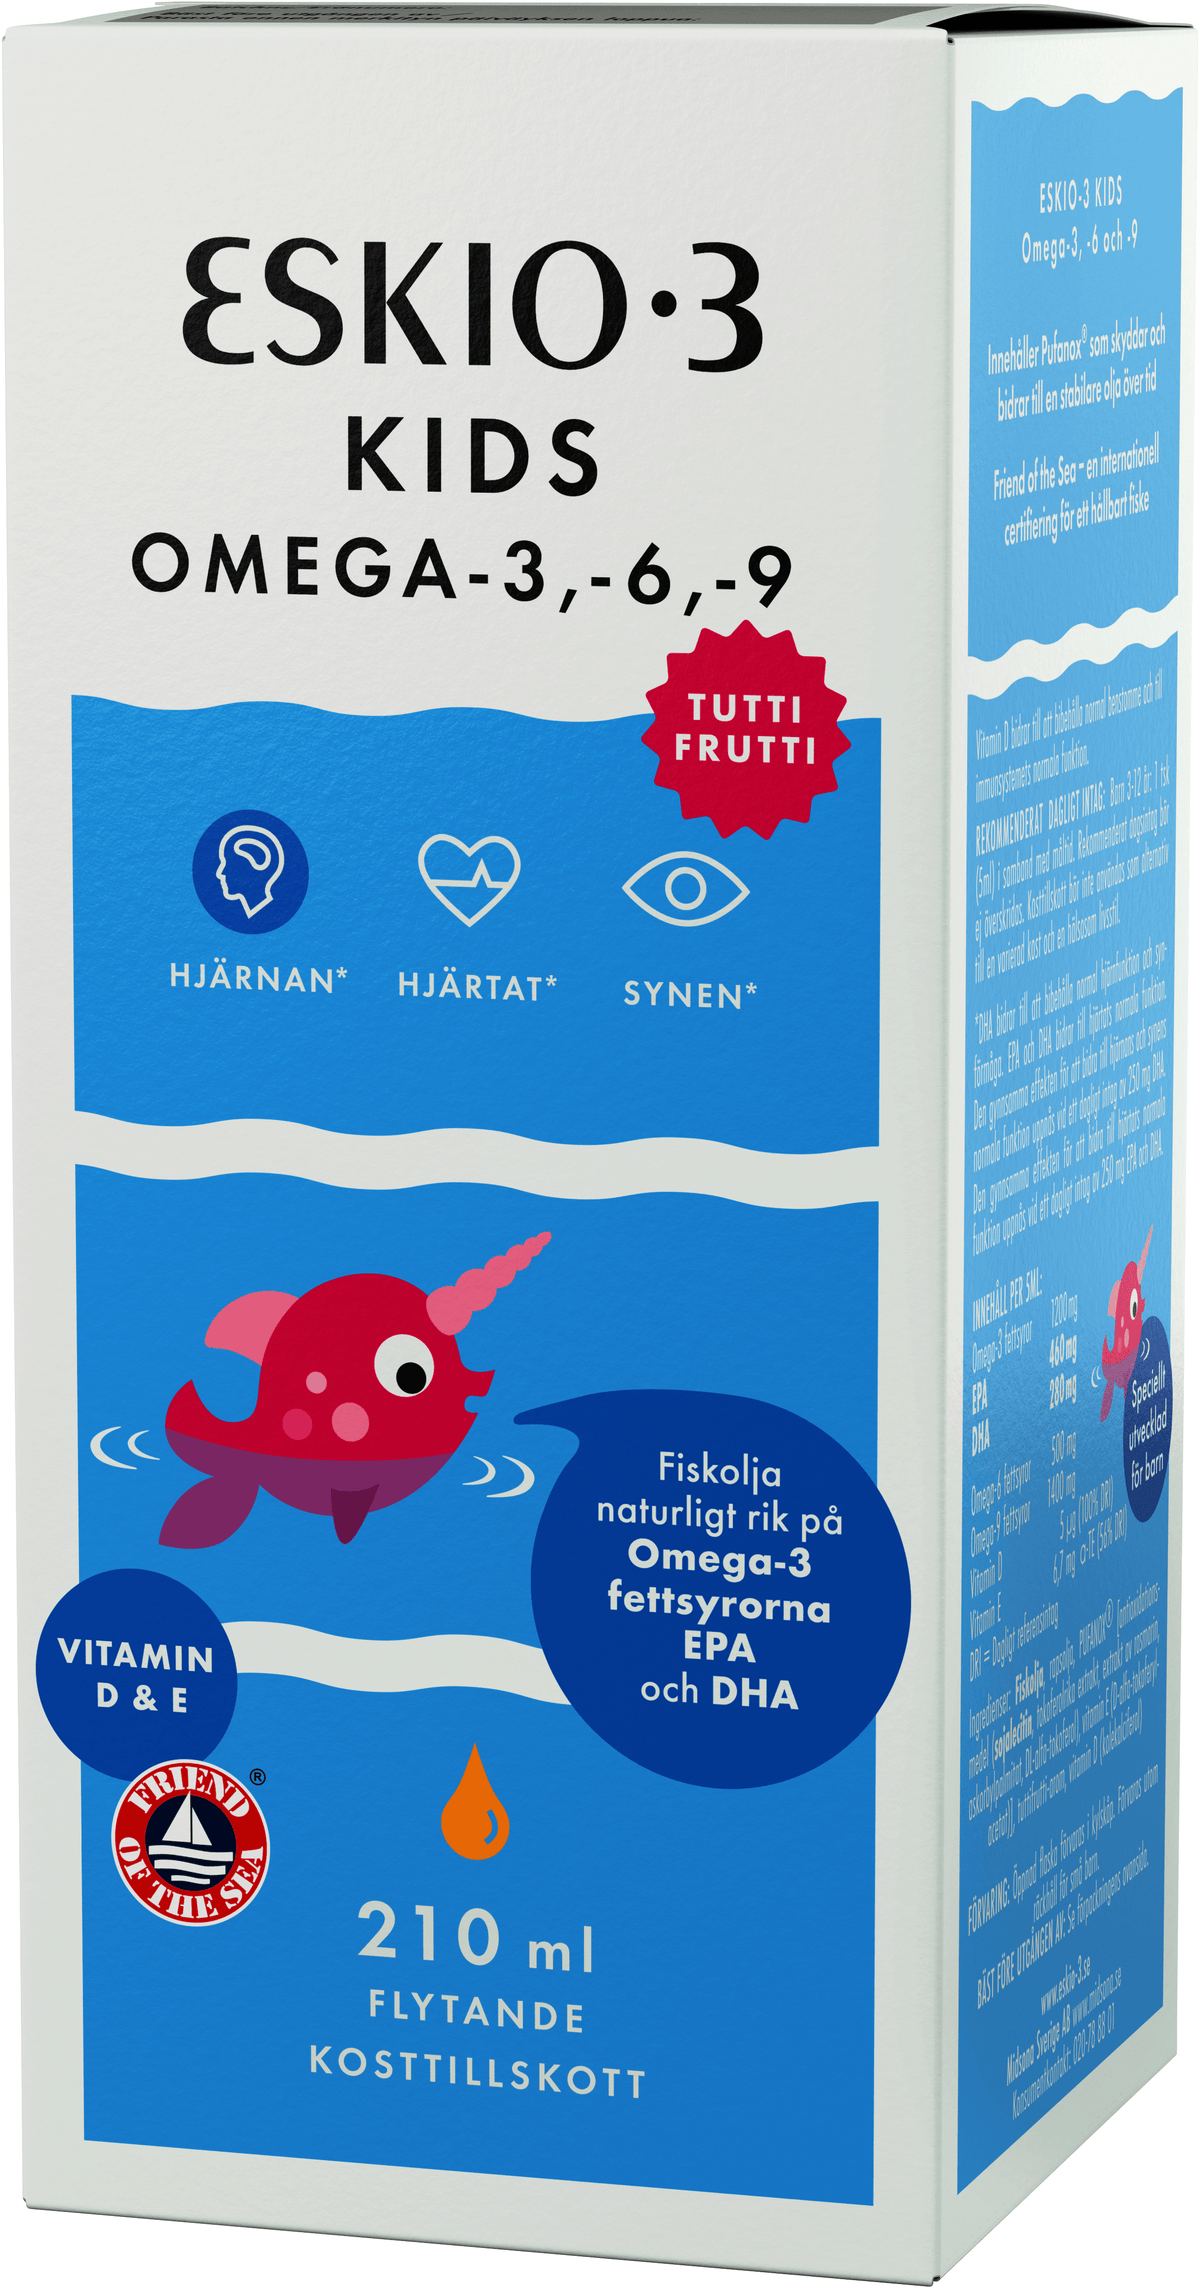 Eskio-3 Kids Omega-3 Kalaöljy 210 ml - maku tuttifrutti